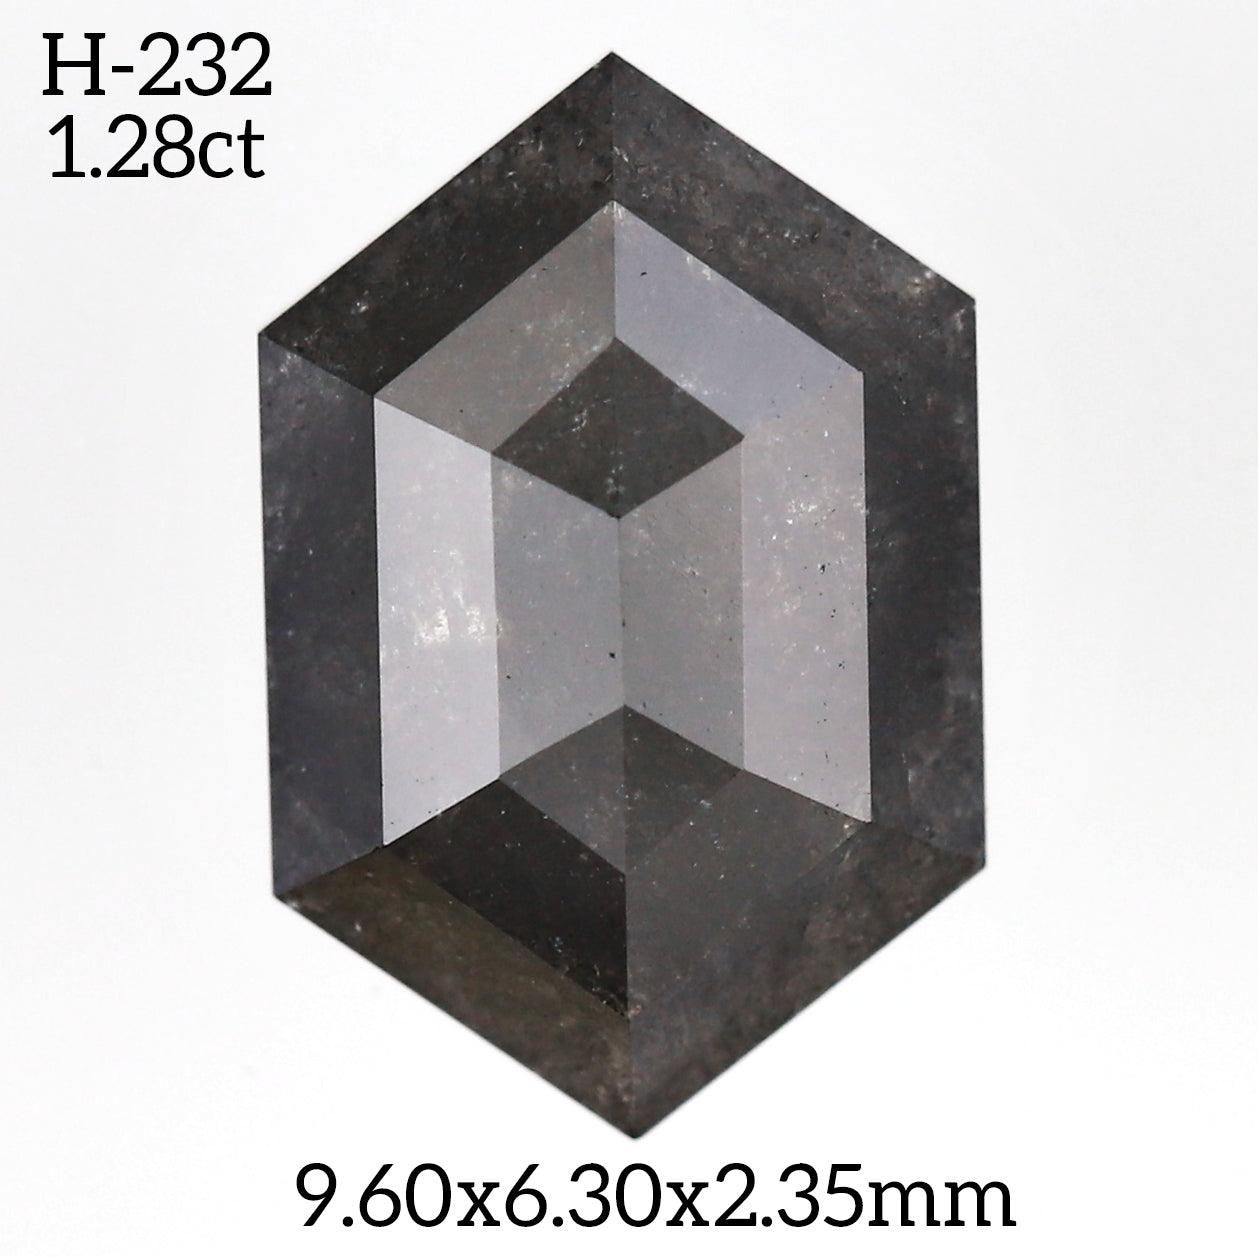 H232 - Salt and pepper hexagon diamond